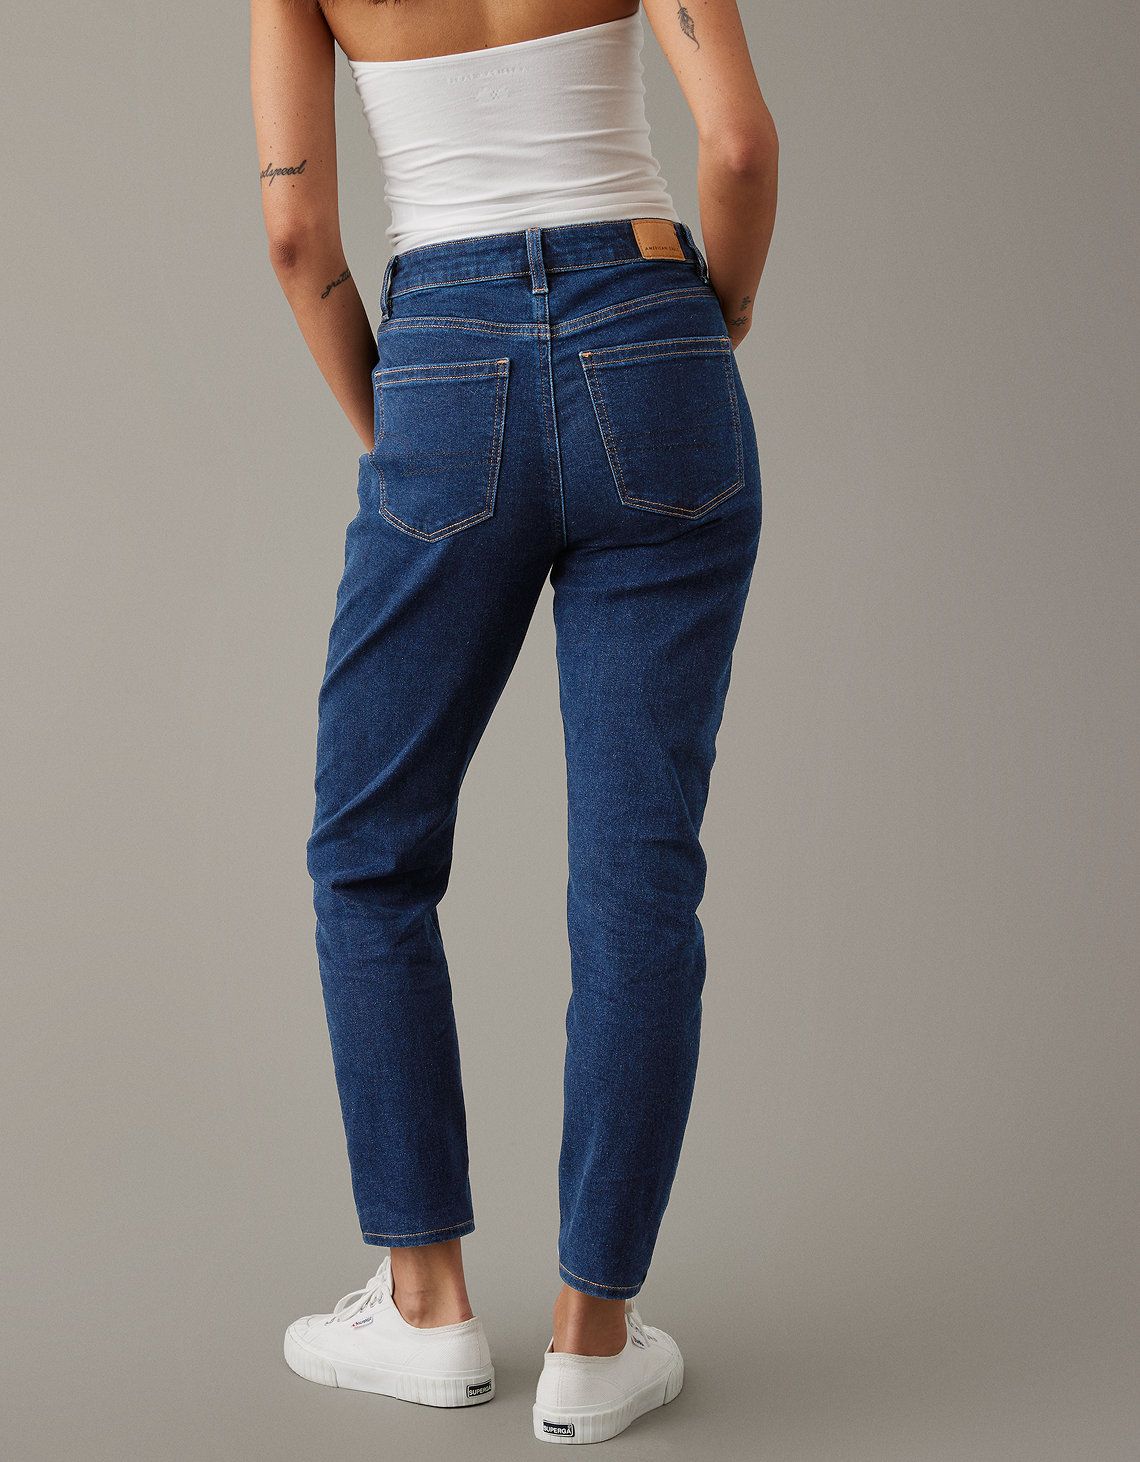  ג'ינס בגזרת MOM של AMERICAN EAGLE